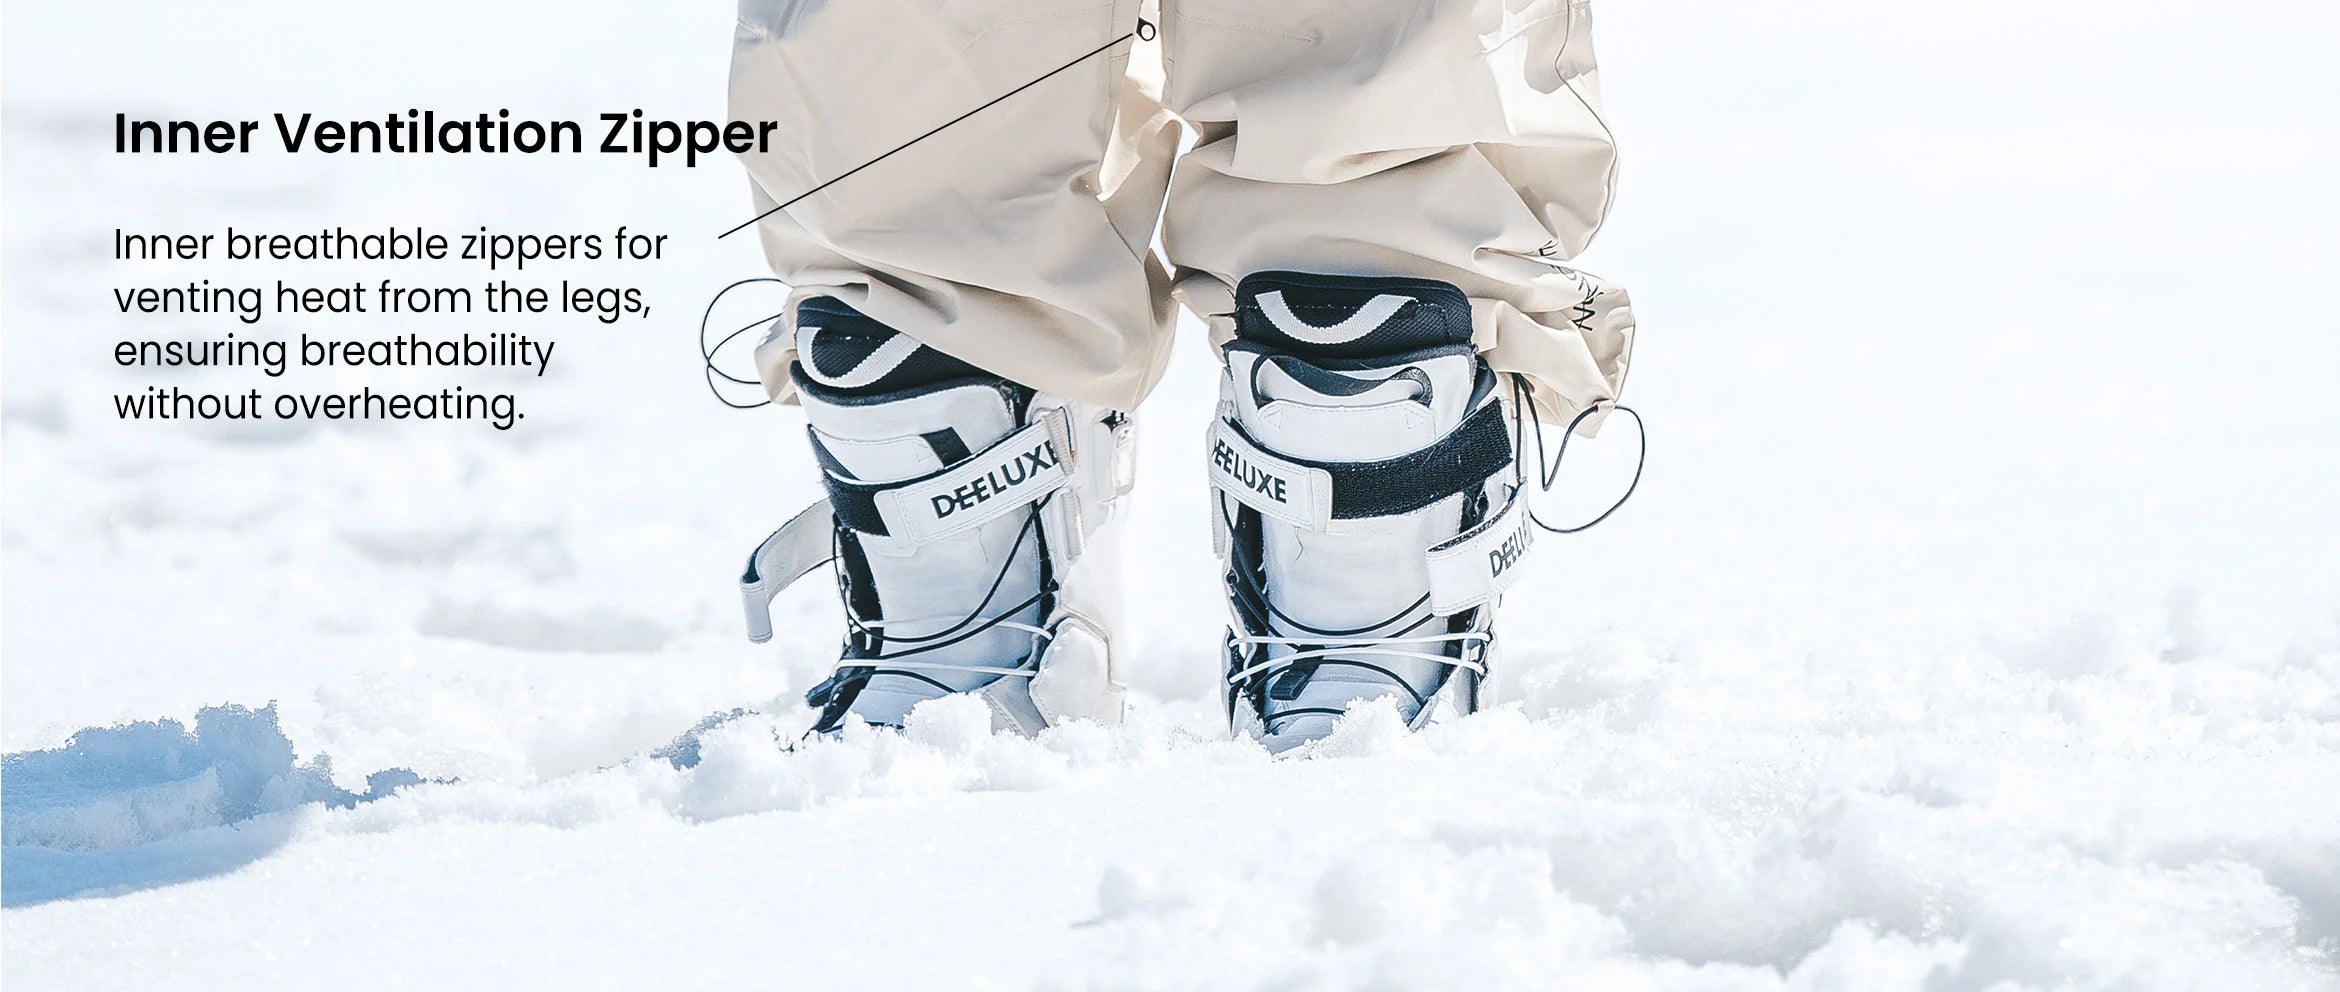 7. Doorek ski suit set - inner ventilation zipper